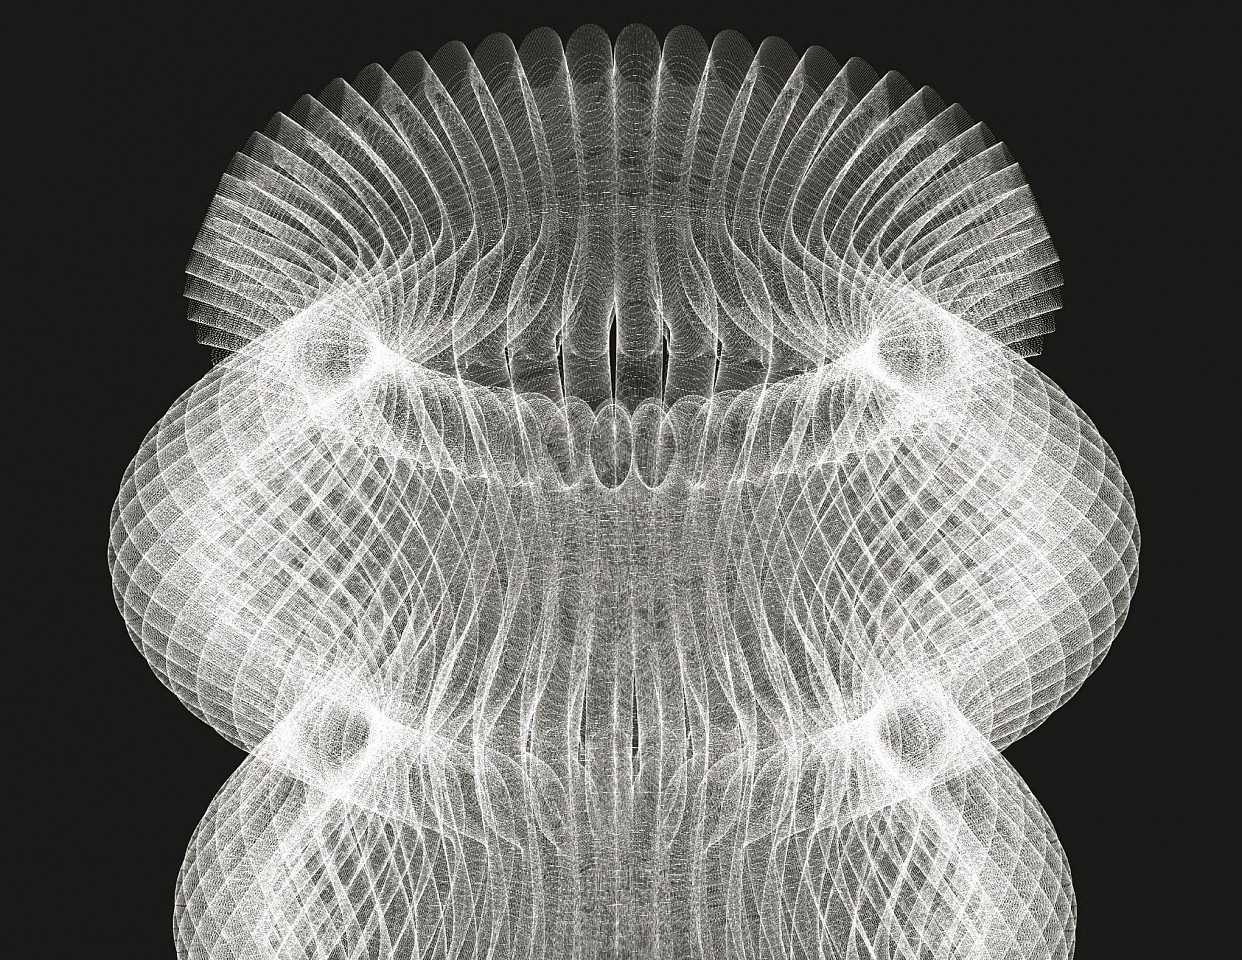 FELICE GRODIN, Juno, 2018
glicee print on cotton paper, 17 x 23 in. (43.2 x 58.4 cm)
FG-C-0047